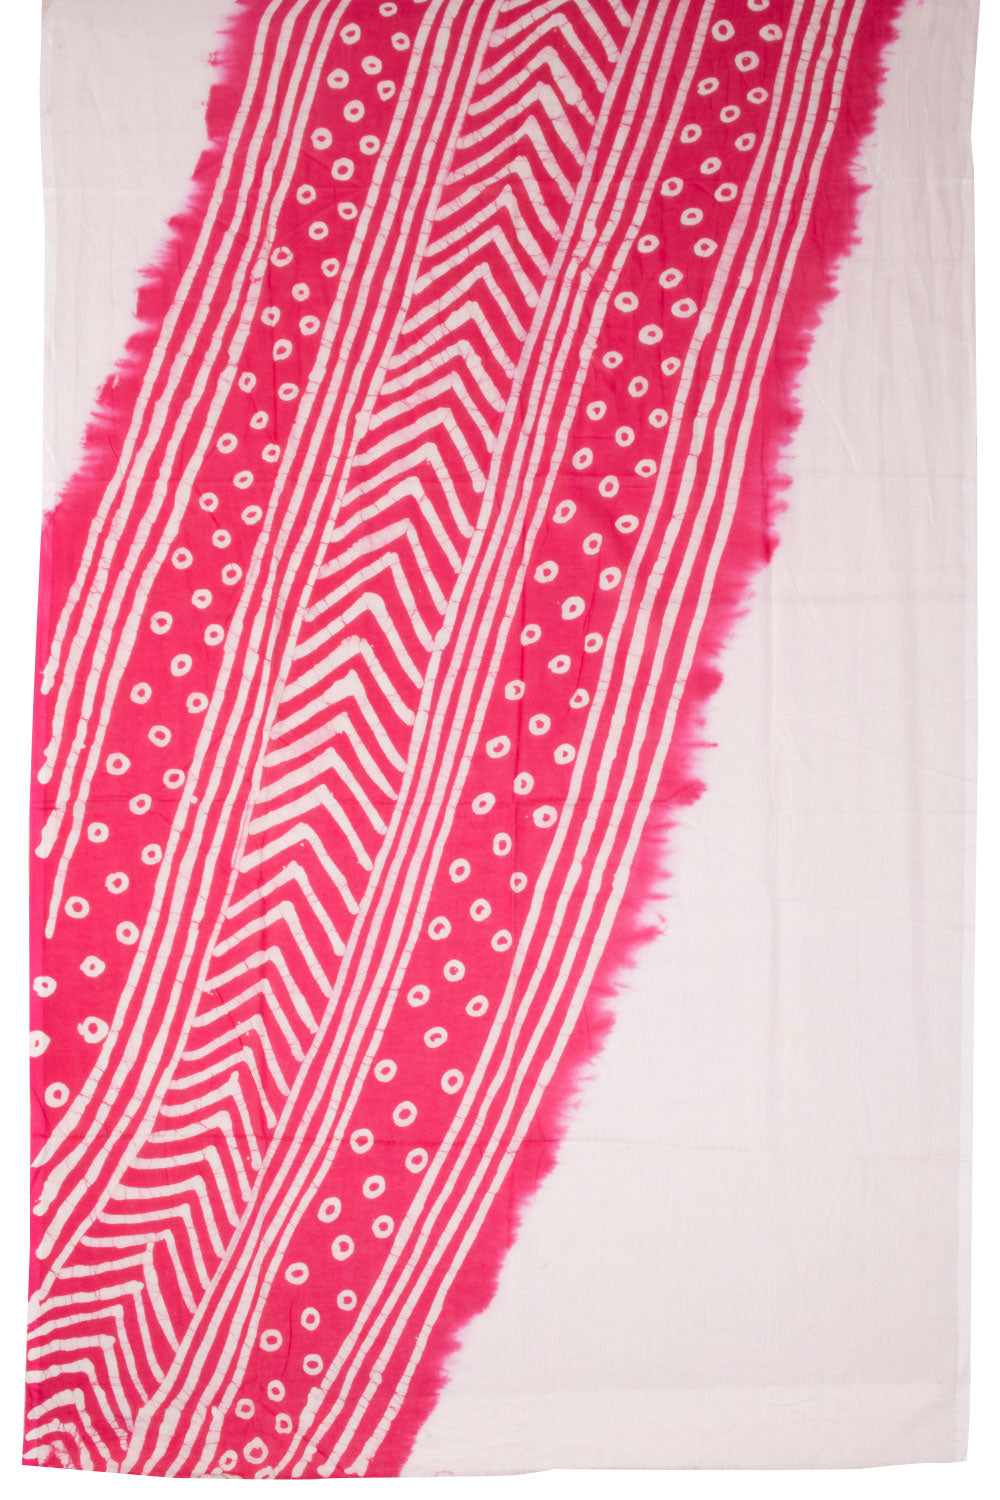 Hot Pink Batik Cotton 3-Piece Salwar Suit Material -Avishya